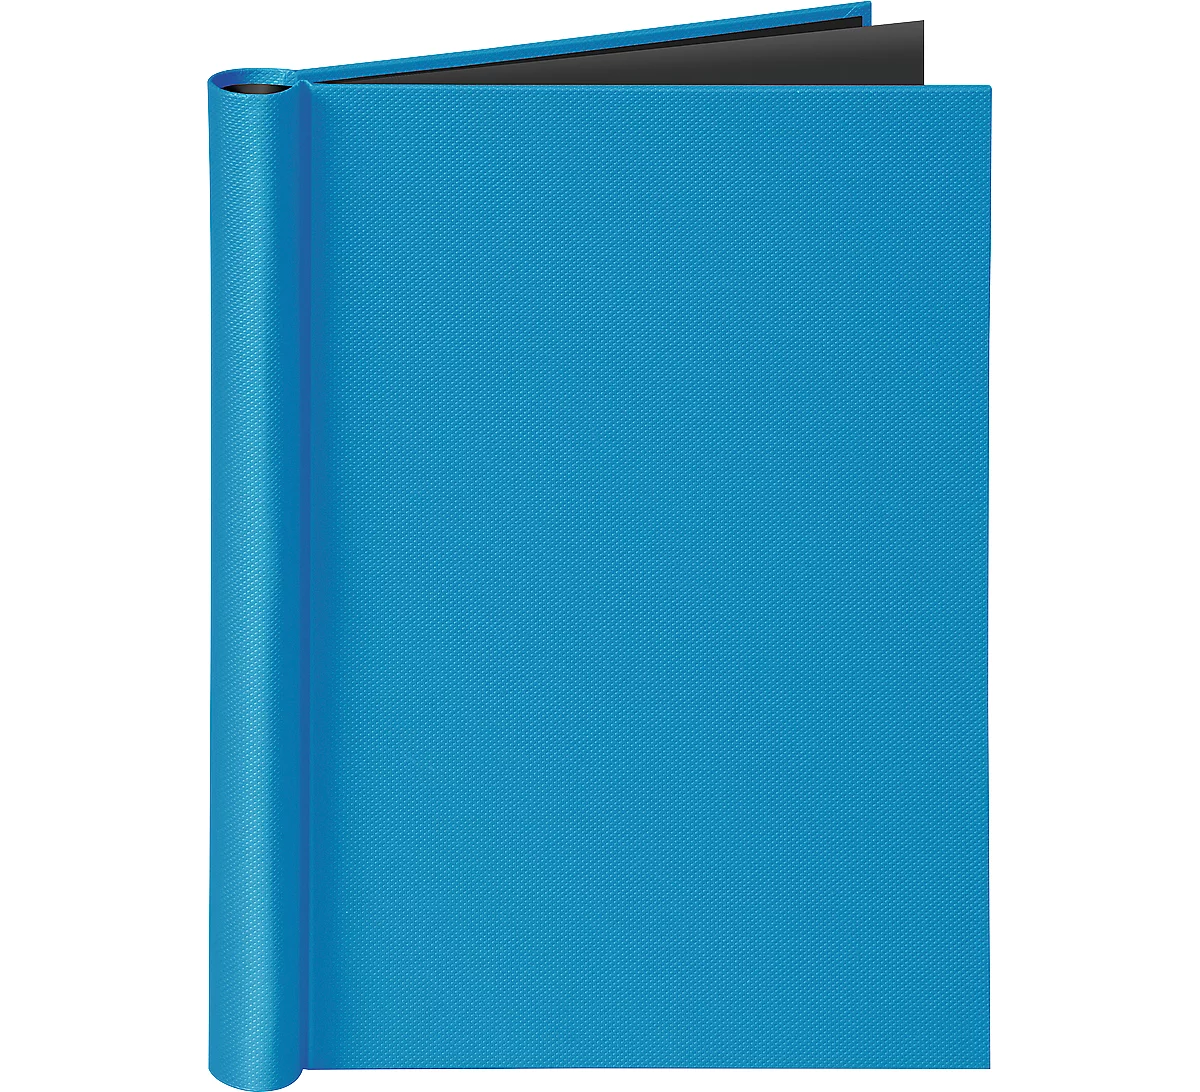 Klemmbinder VELOCOLOR®, für Formate DIN A4, mit Klemmfeder, max. 150 Blatt, blau